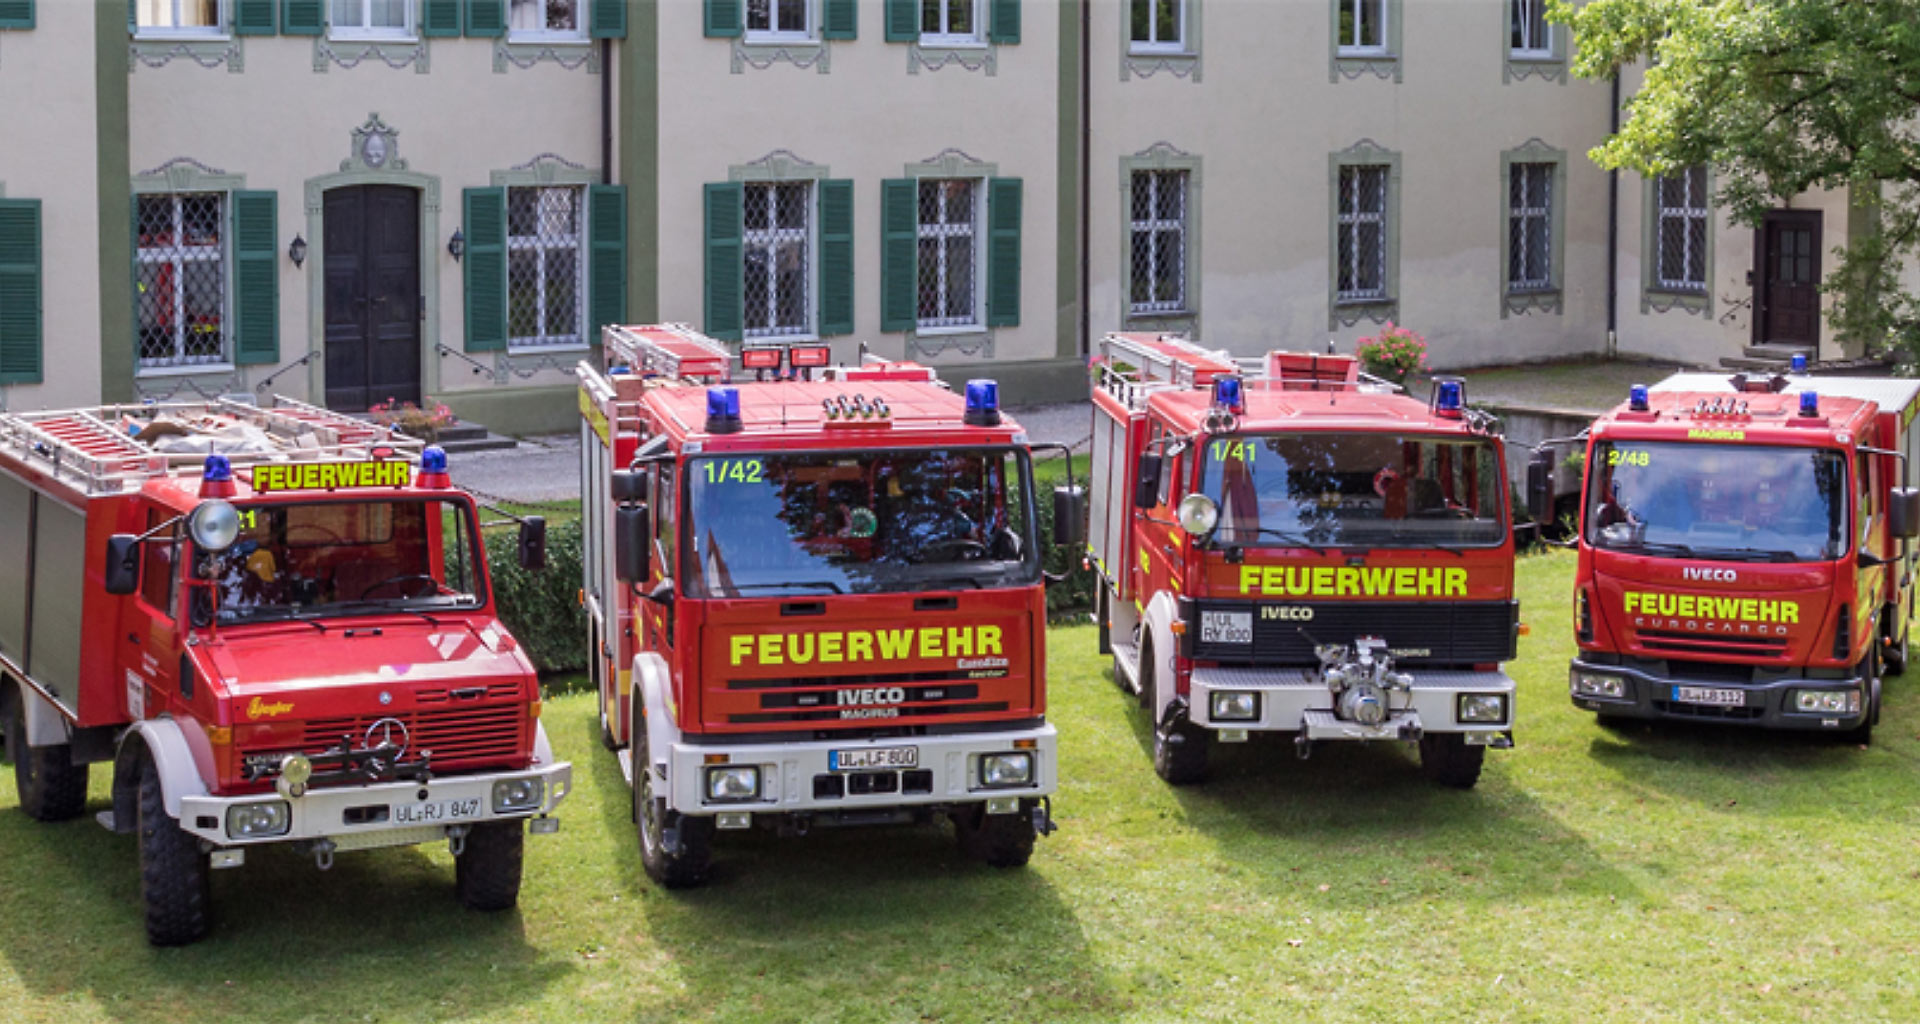 Feuerwehr Fahrzeuge